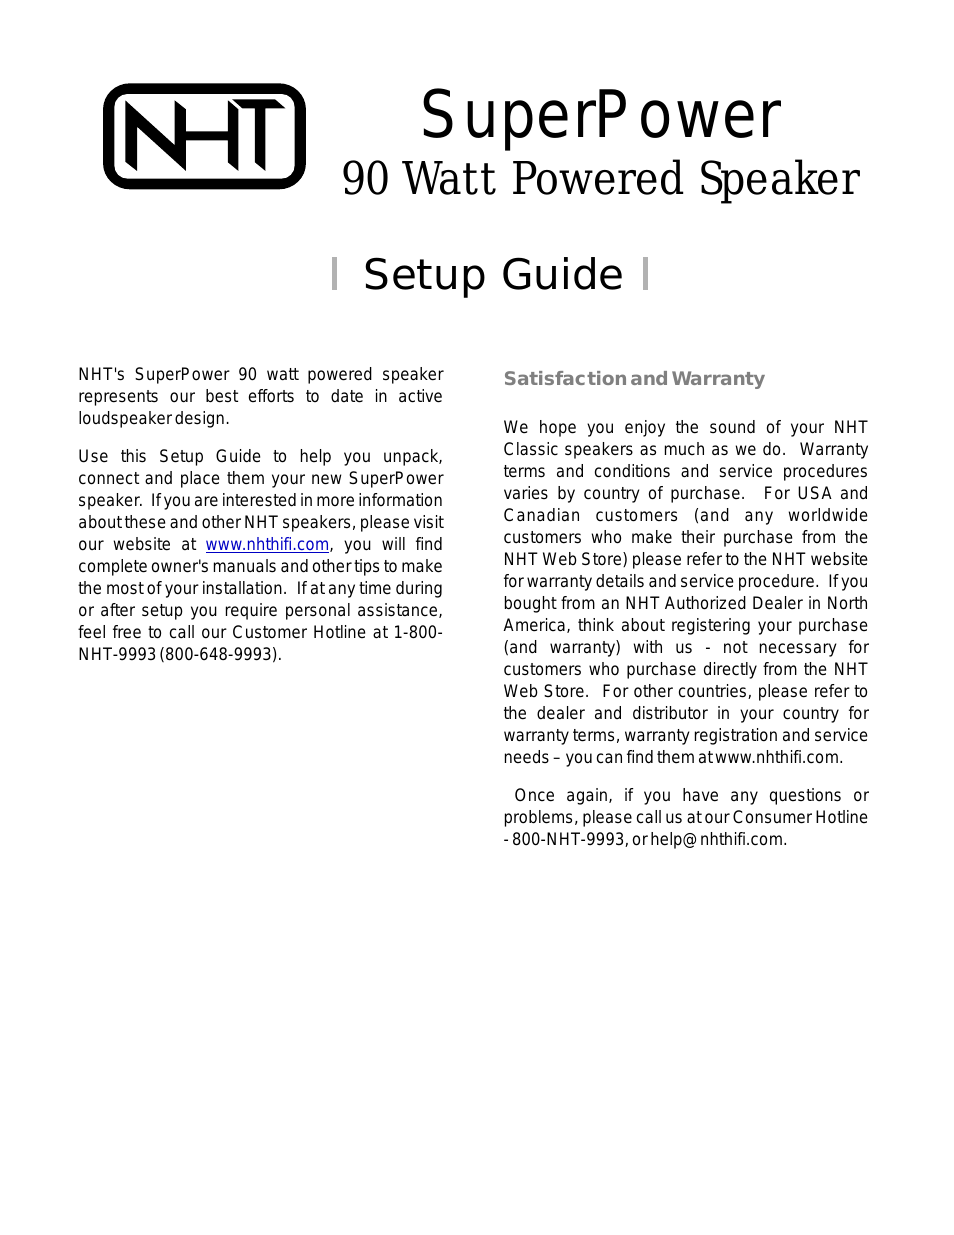 SuperPower 90 Watt Powered Speaker -9993